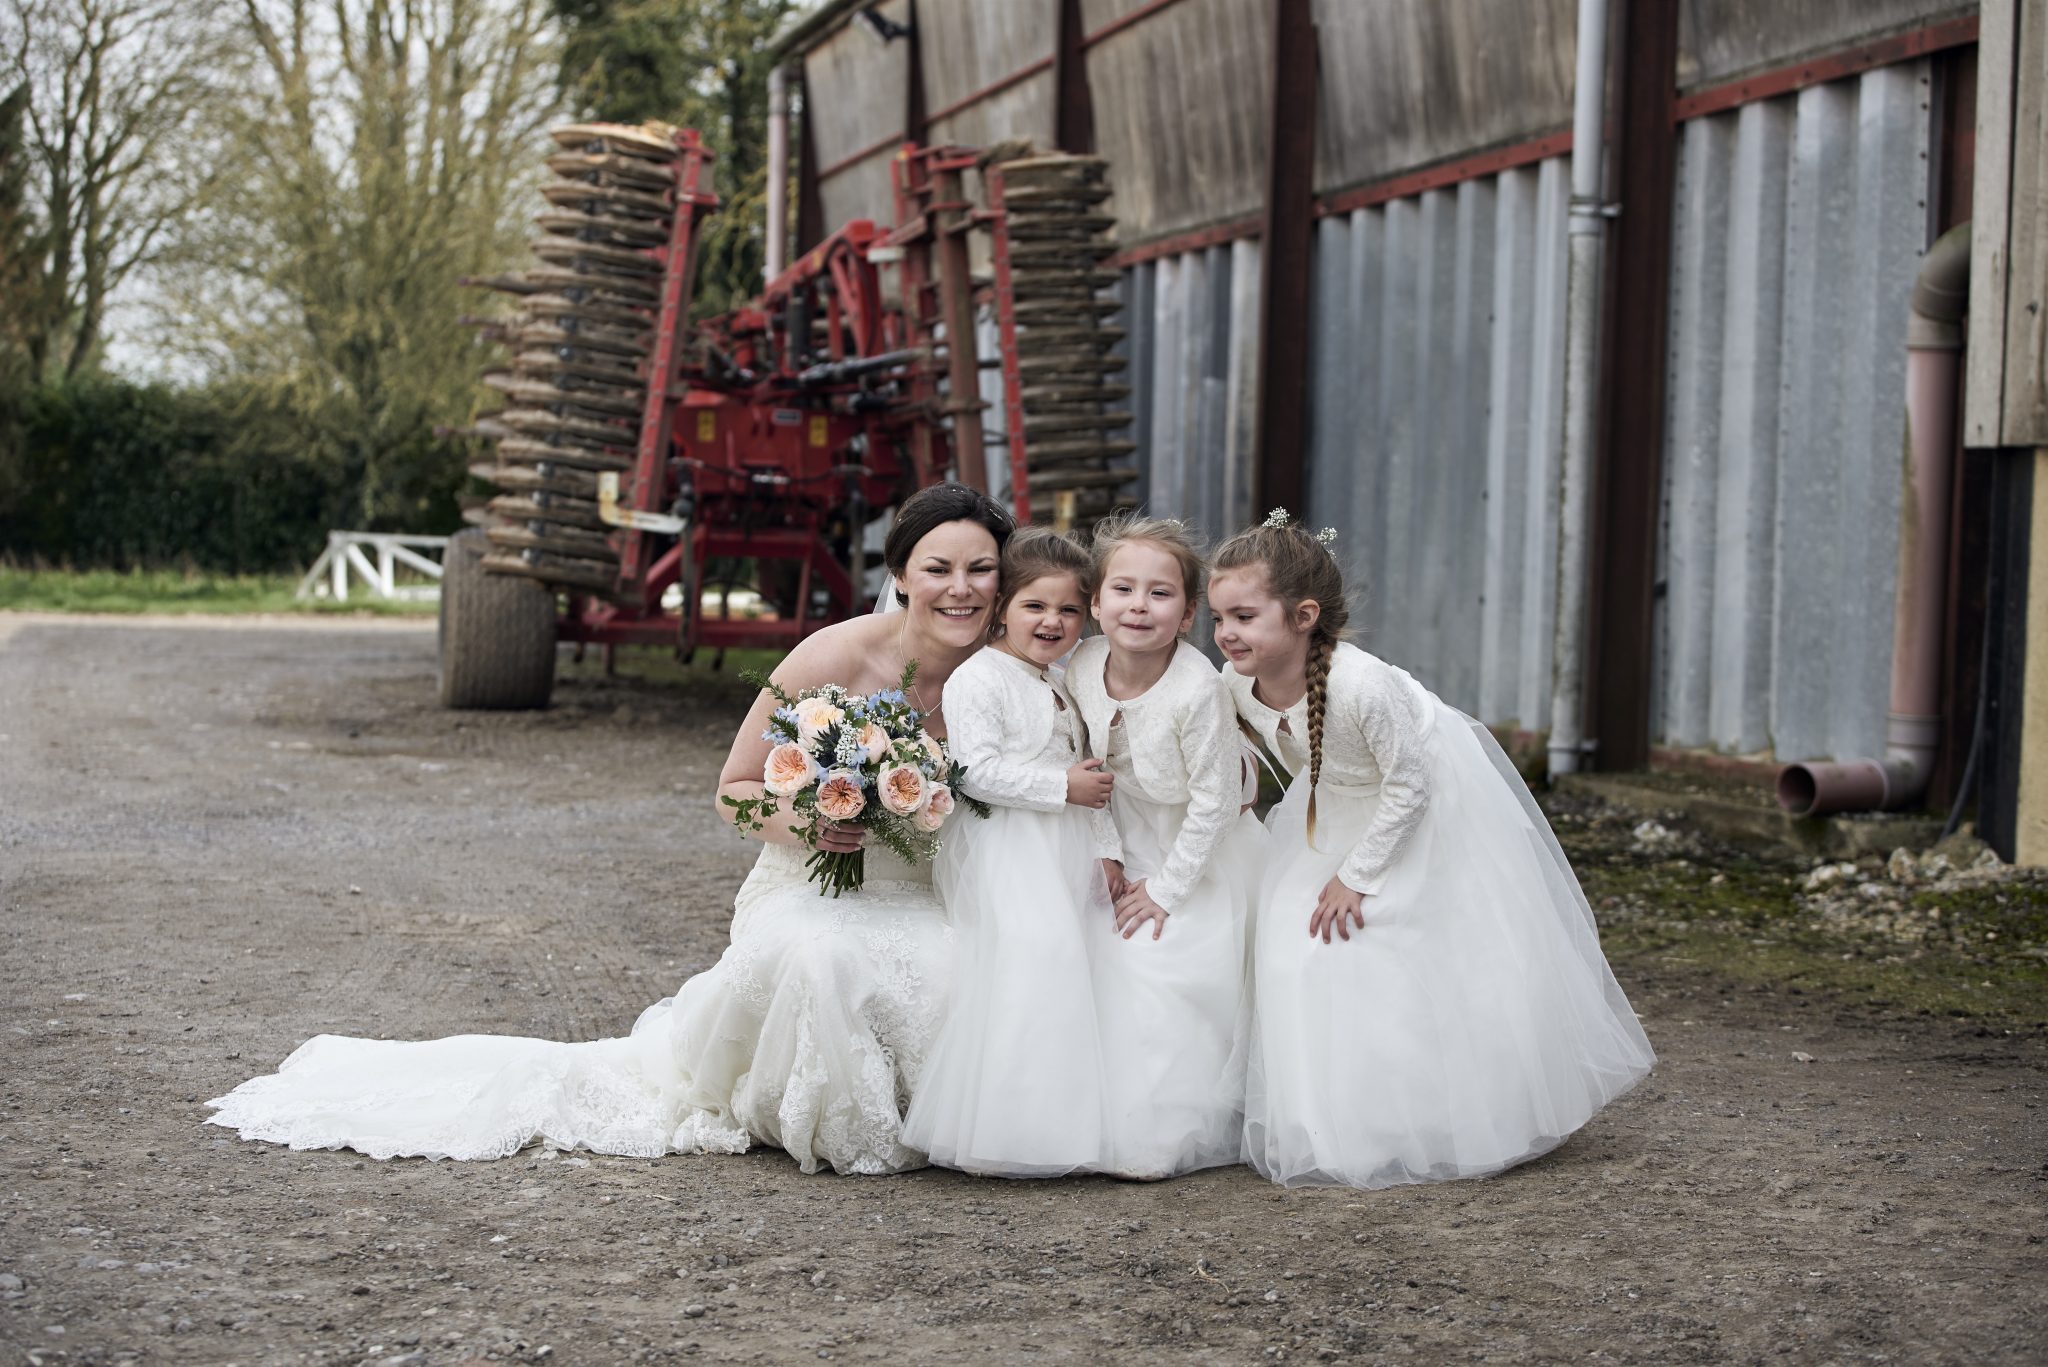 Farmyard Wedding in Wyle, Warminster - Wedding Photographer